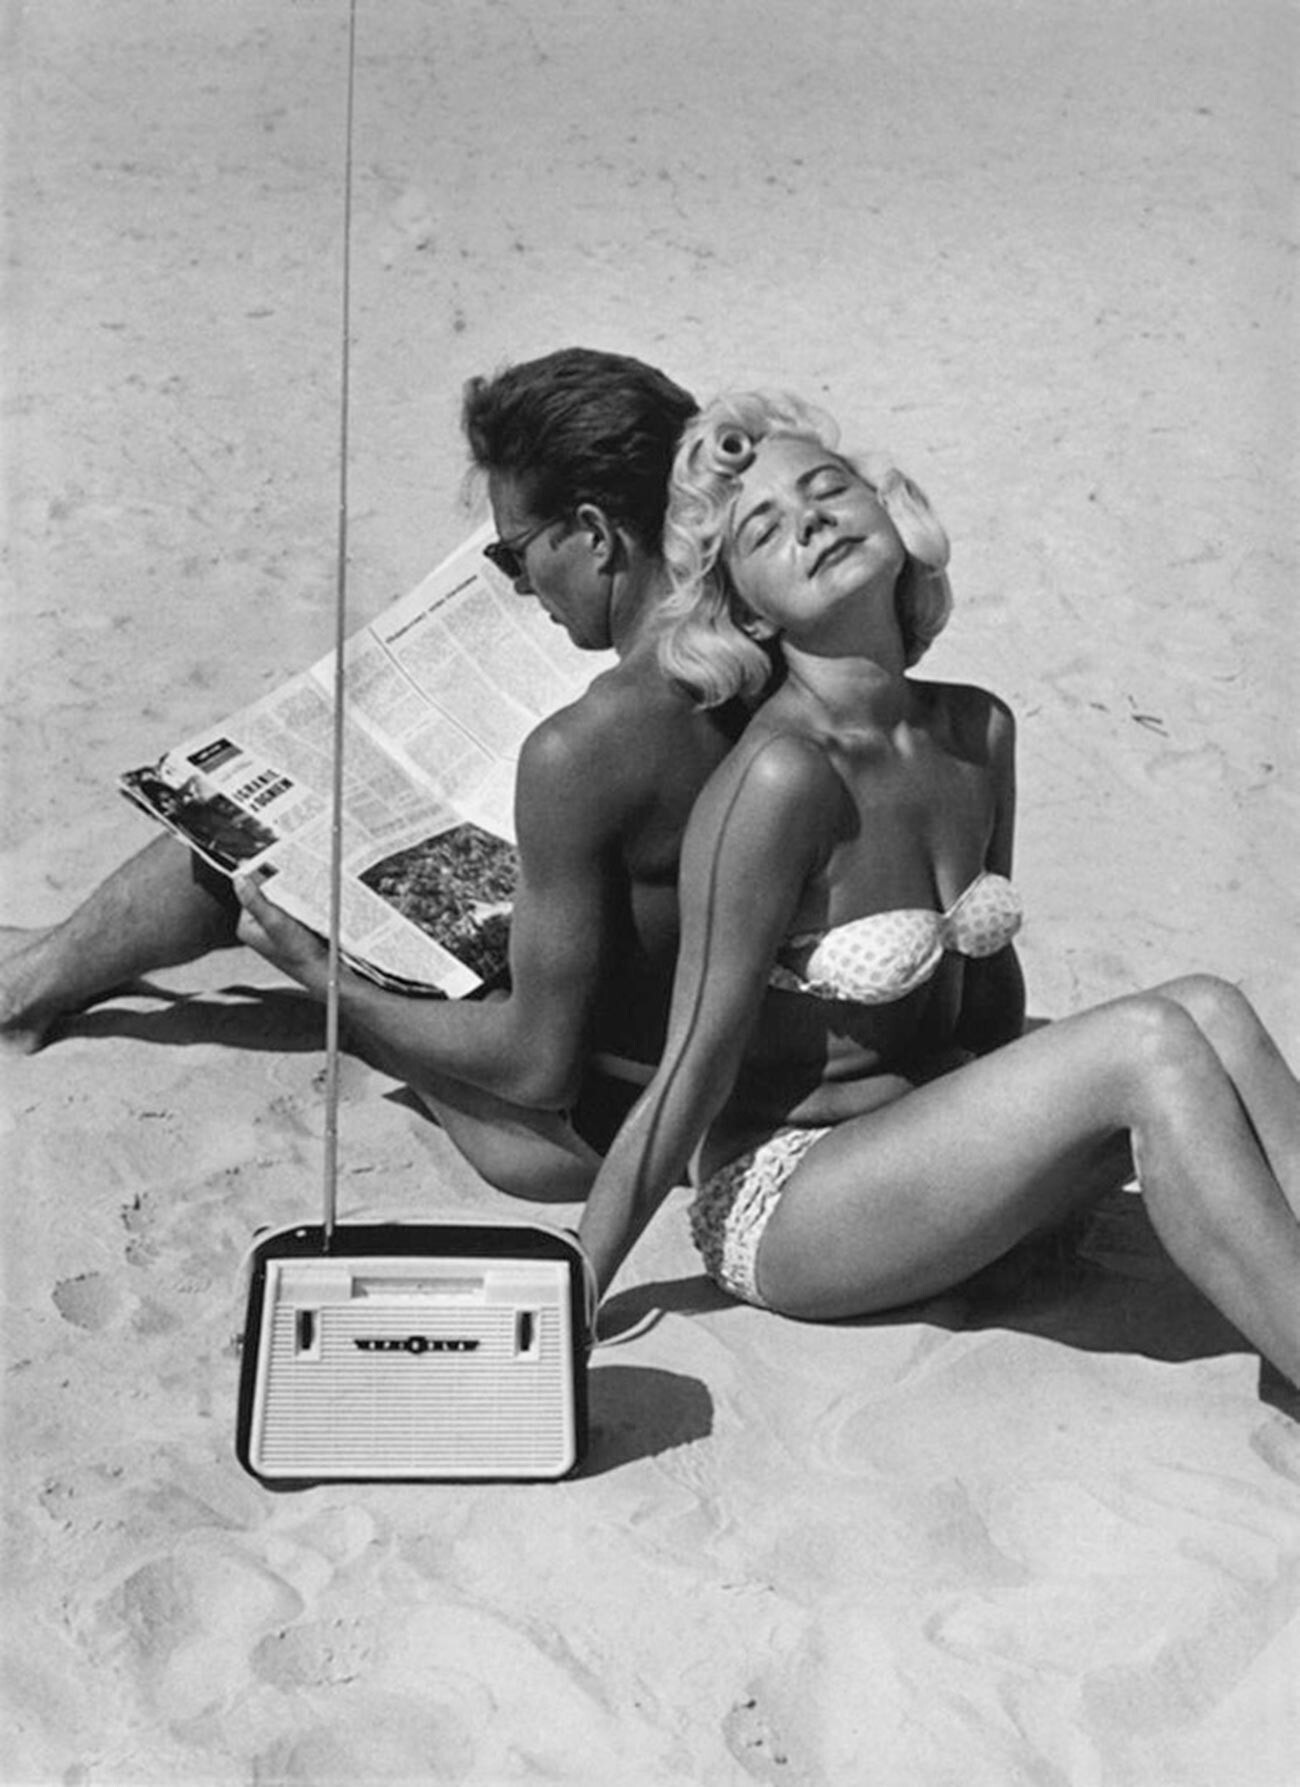 La primera “Spidola”, en la playa de Jurmala, 1960